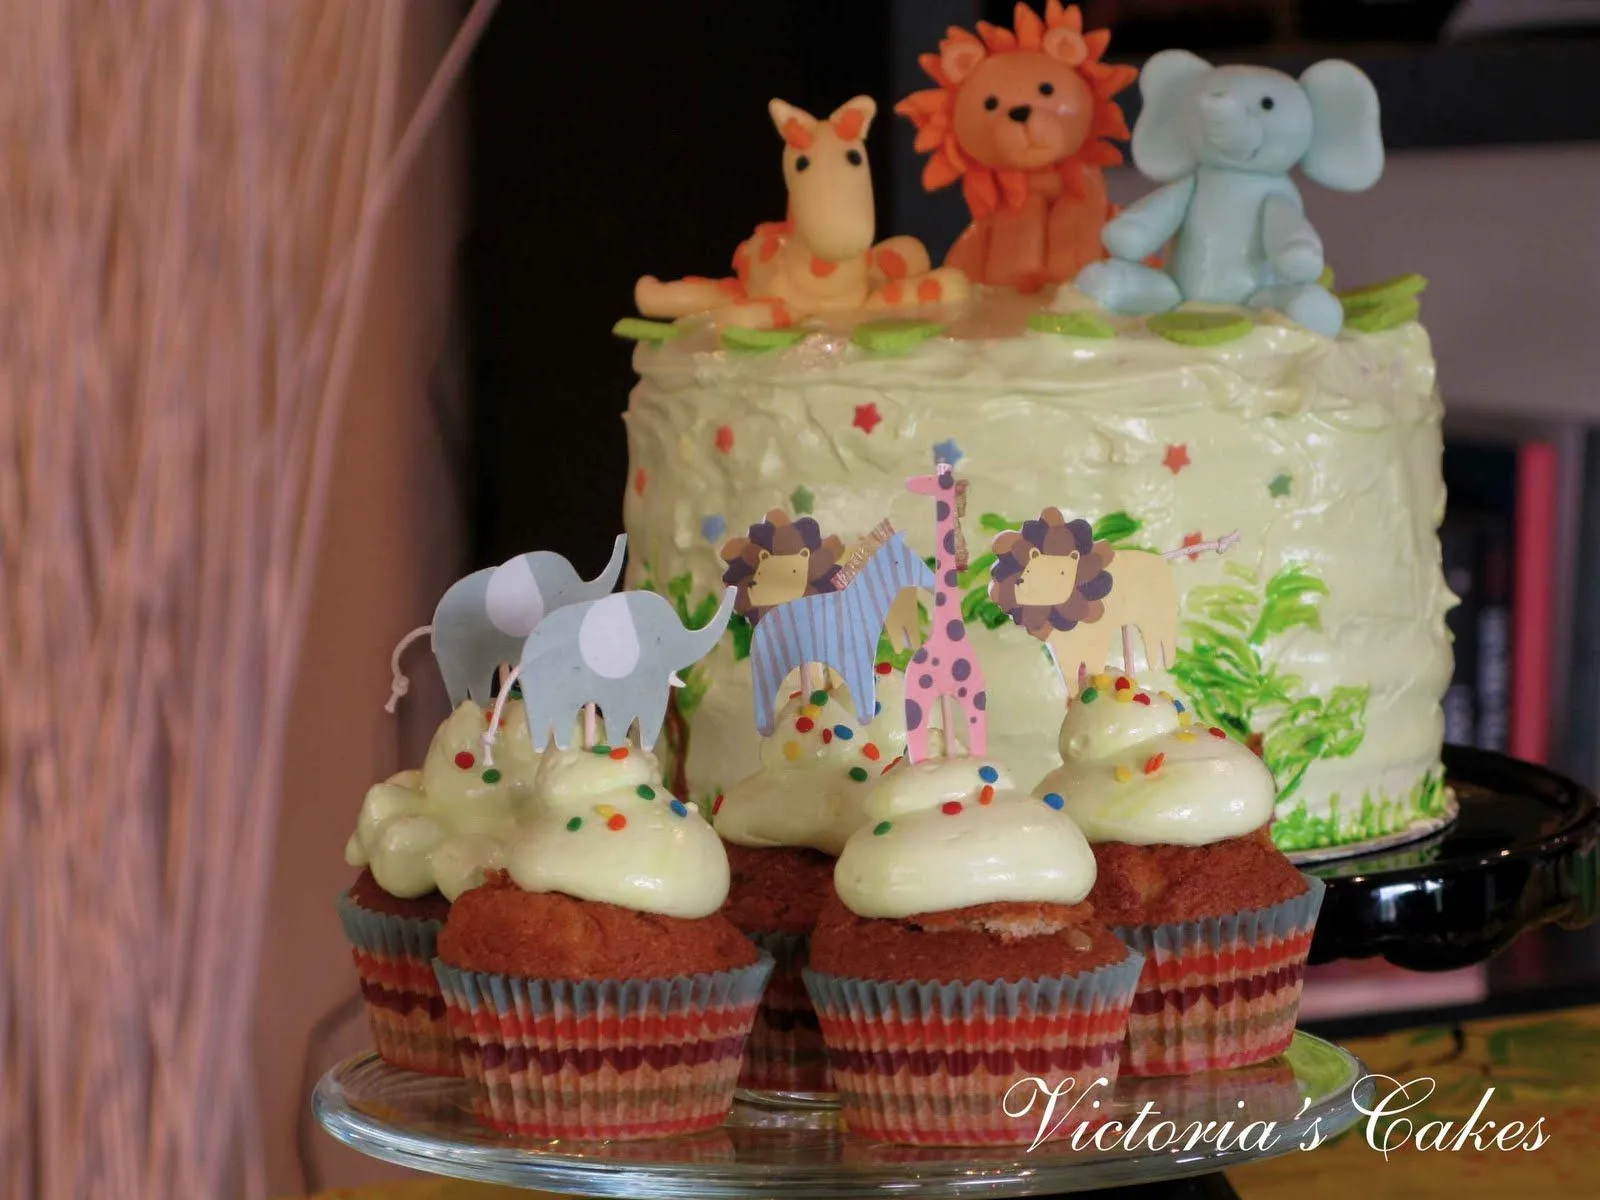 Victoria's Cakes: Fiesta de cumpleaños de animales en la Selva!!!